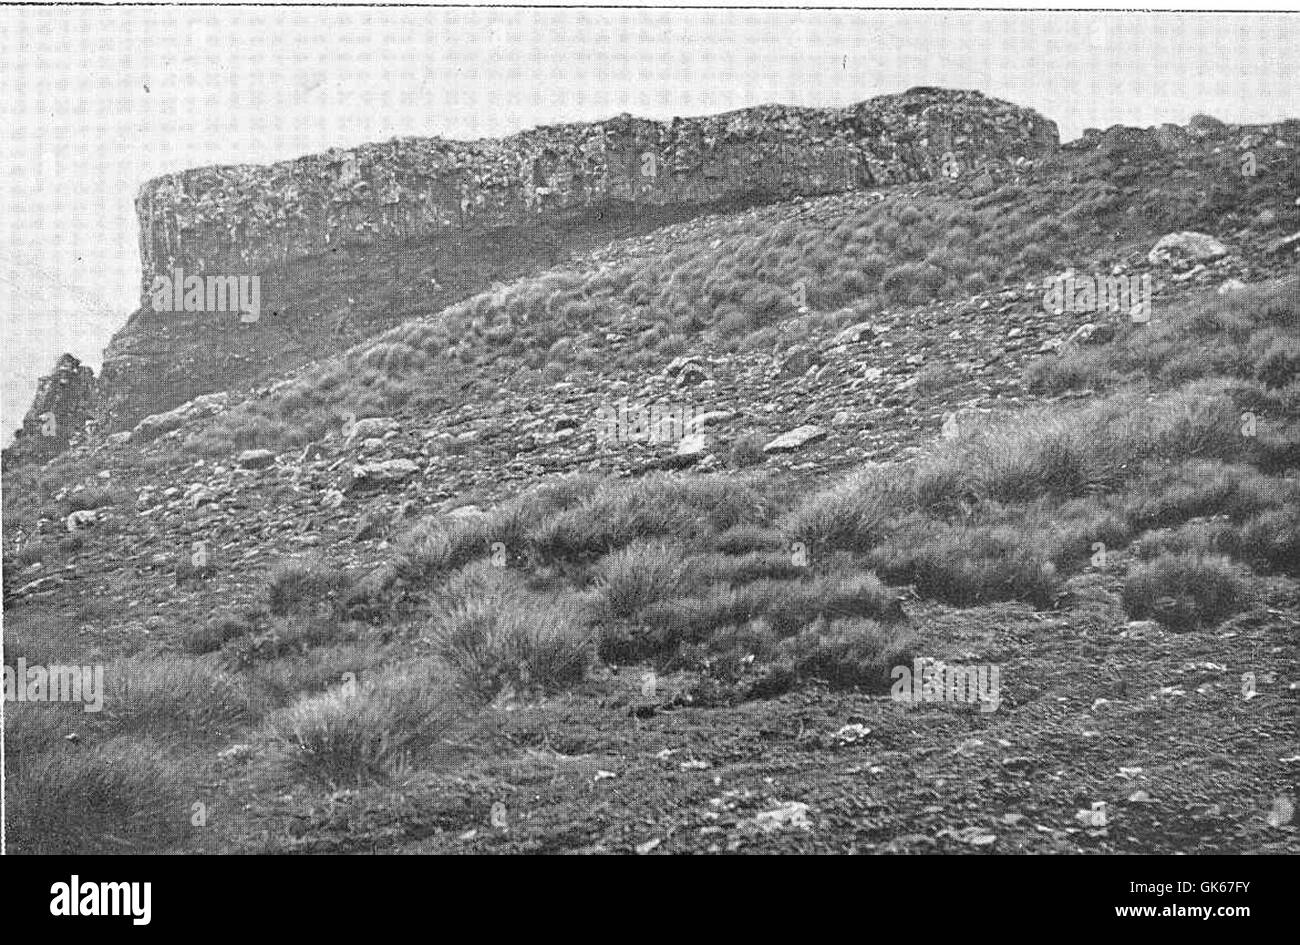 50813 Cap of Rudely Columnar Basalt, Head of Valley Running into Coleridge Bay Stock Photo